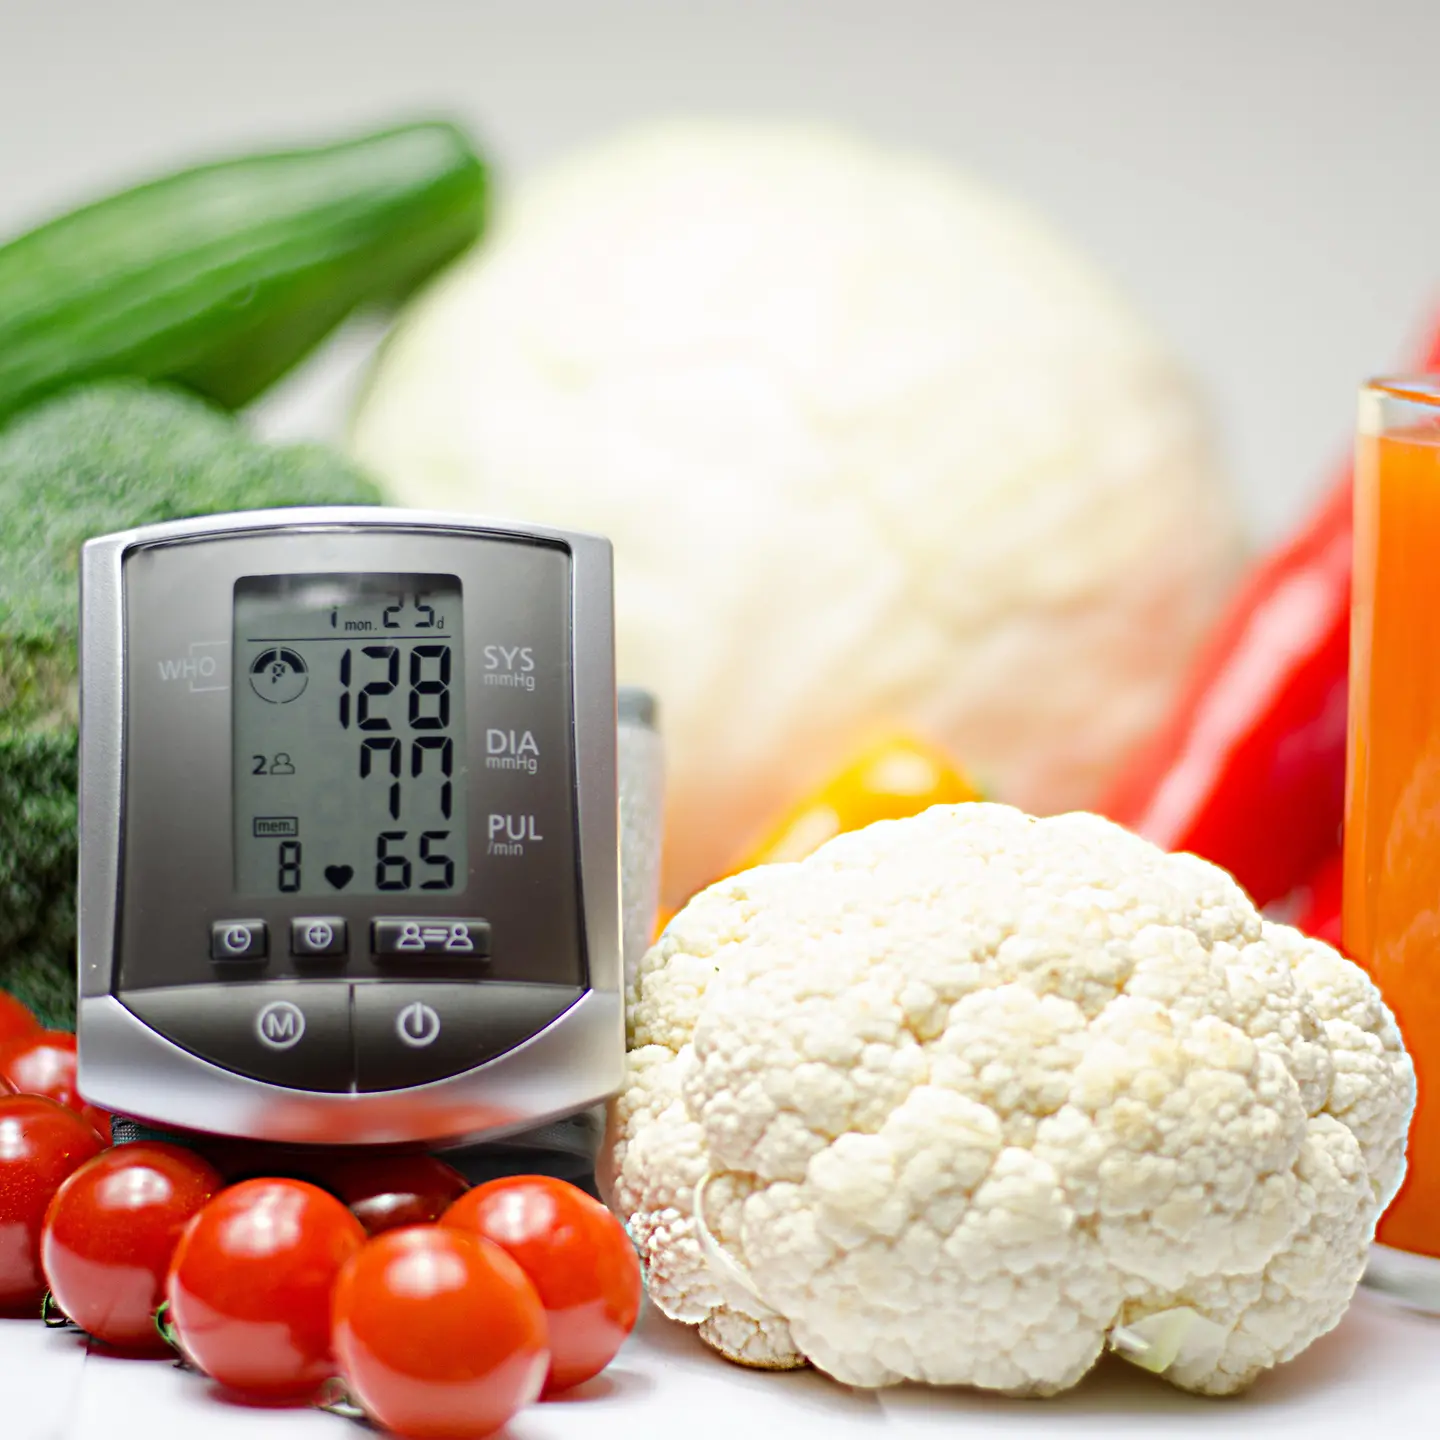 Zu sehen ist ein Blutdruckmessgerät und Gemüse